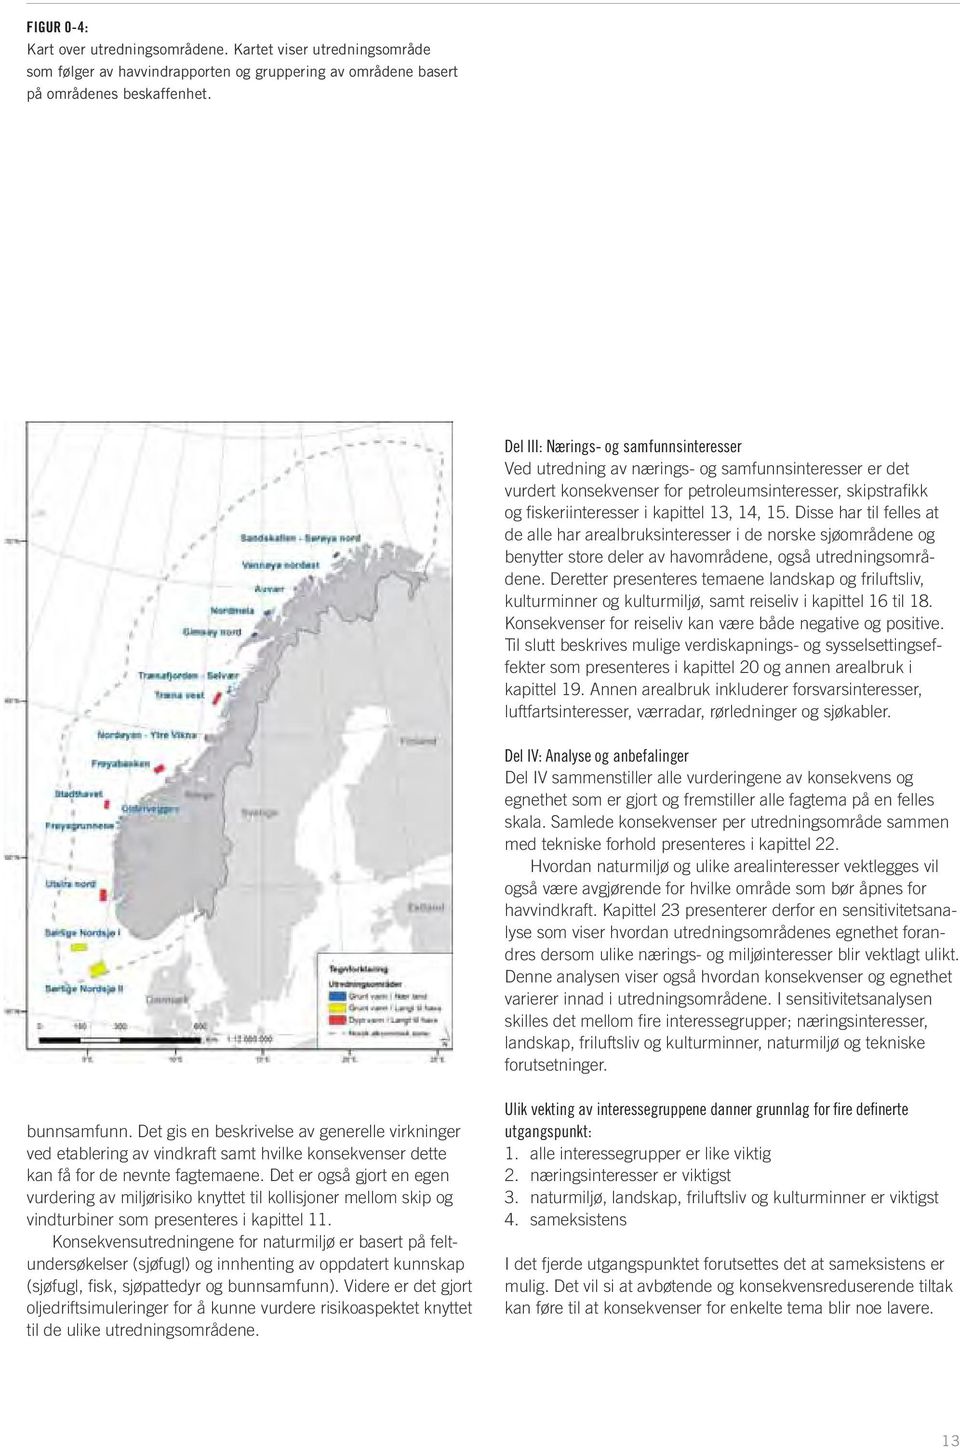 Disse har til felles at de alle har arealbruksinteresser i de norske sjøområdene og benytter store deler av havområdene, også utredningsområdene.